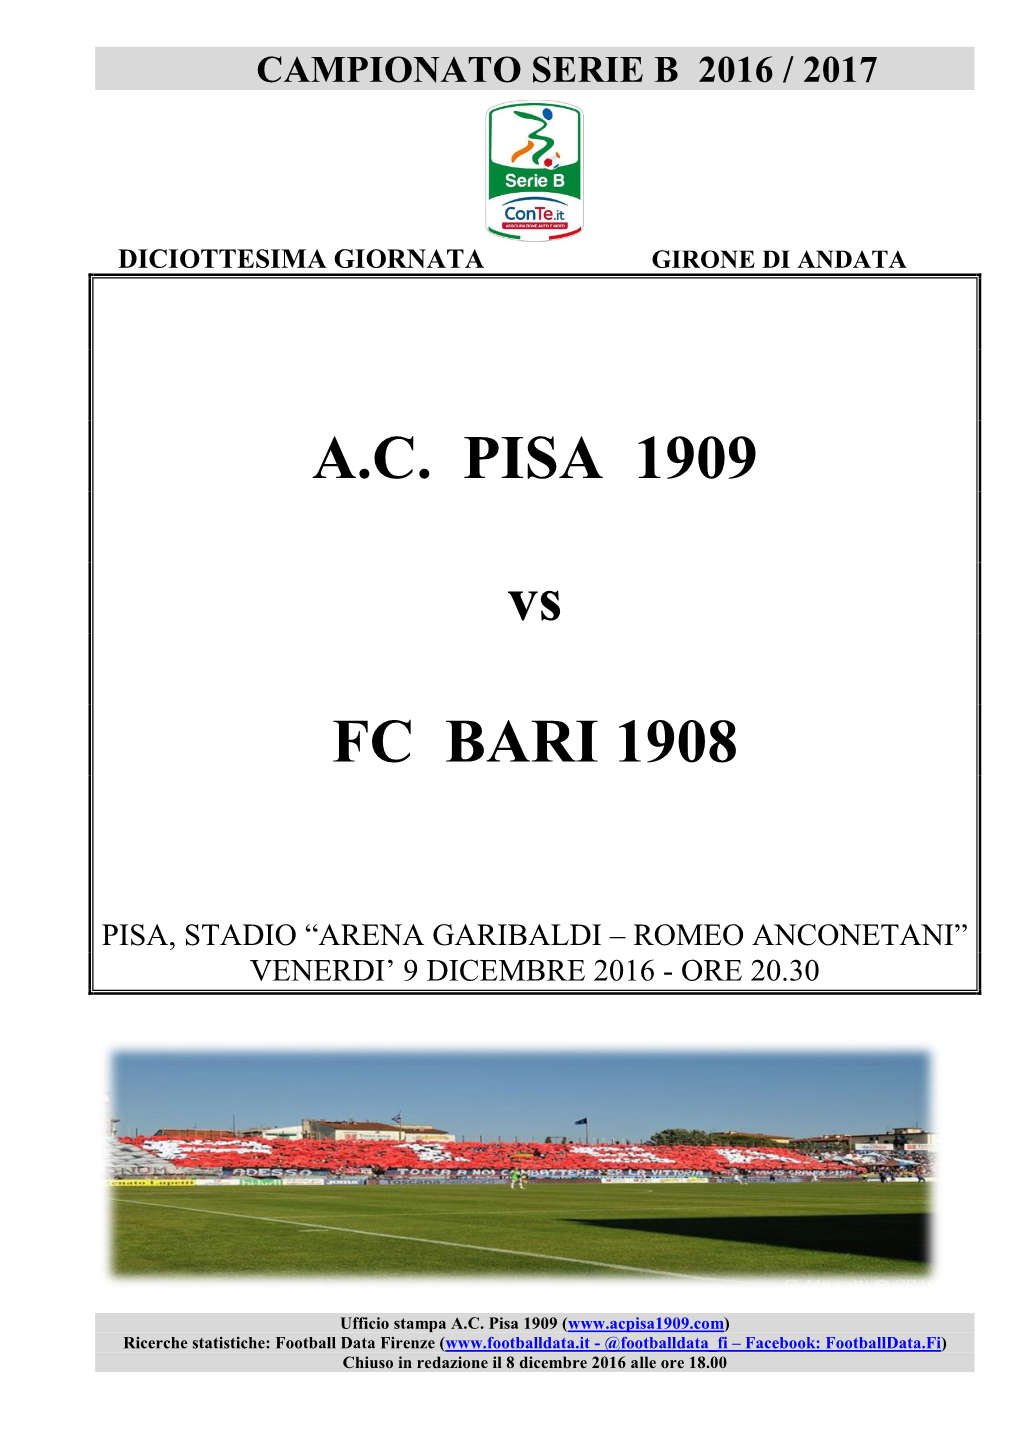 A.C. PISA 1909 Vs FC BARI 1908